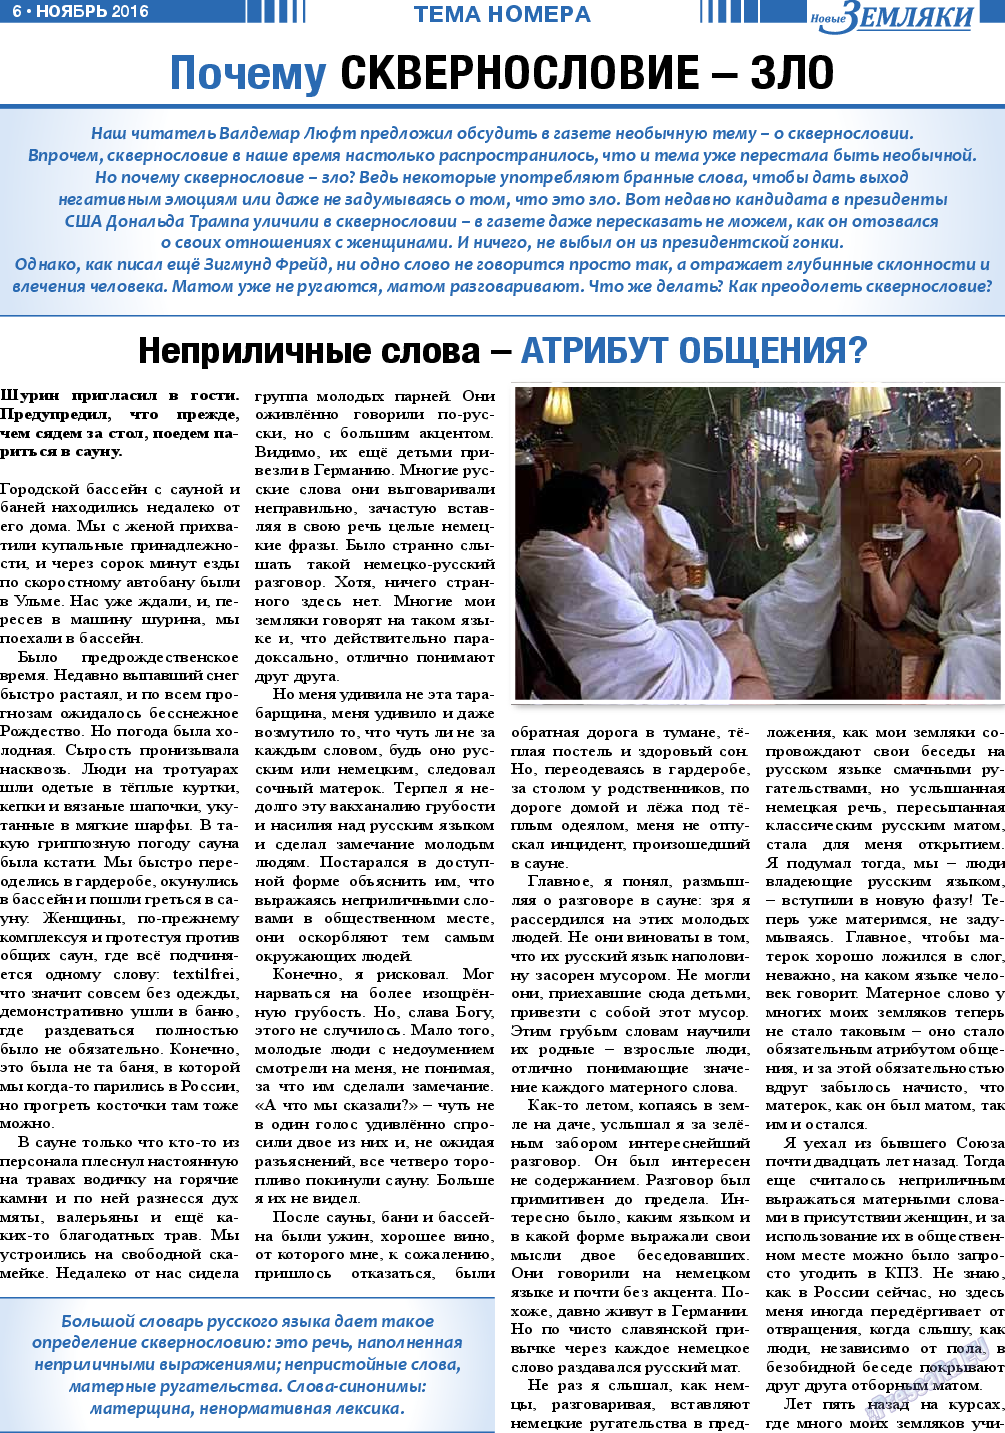 Новые Земляки, газета. 2016 №11 стр.6